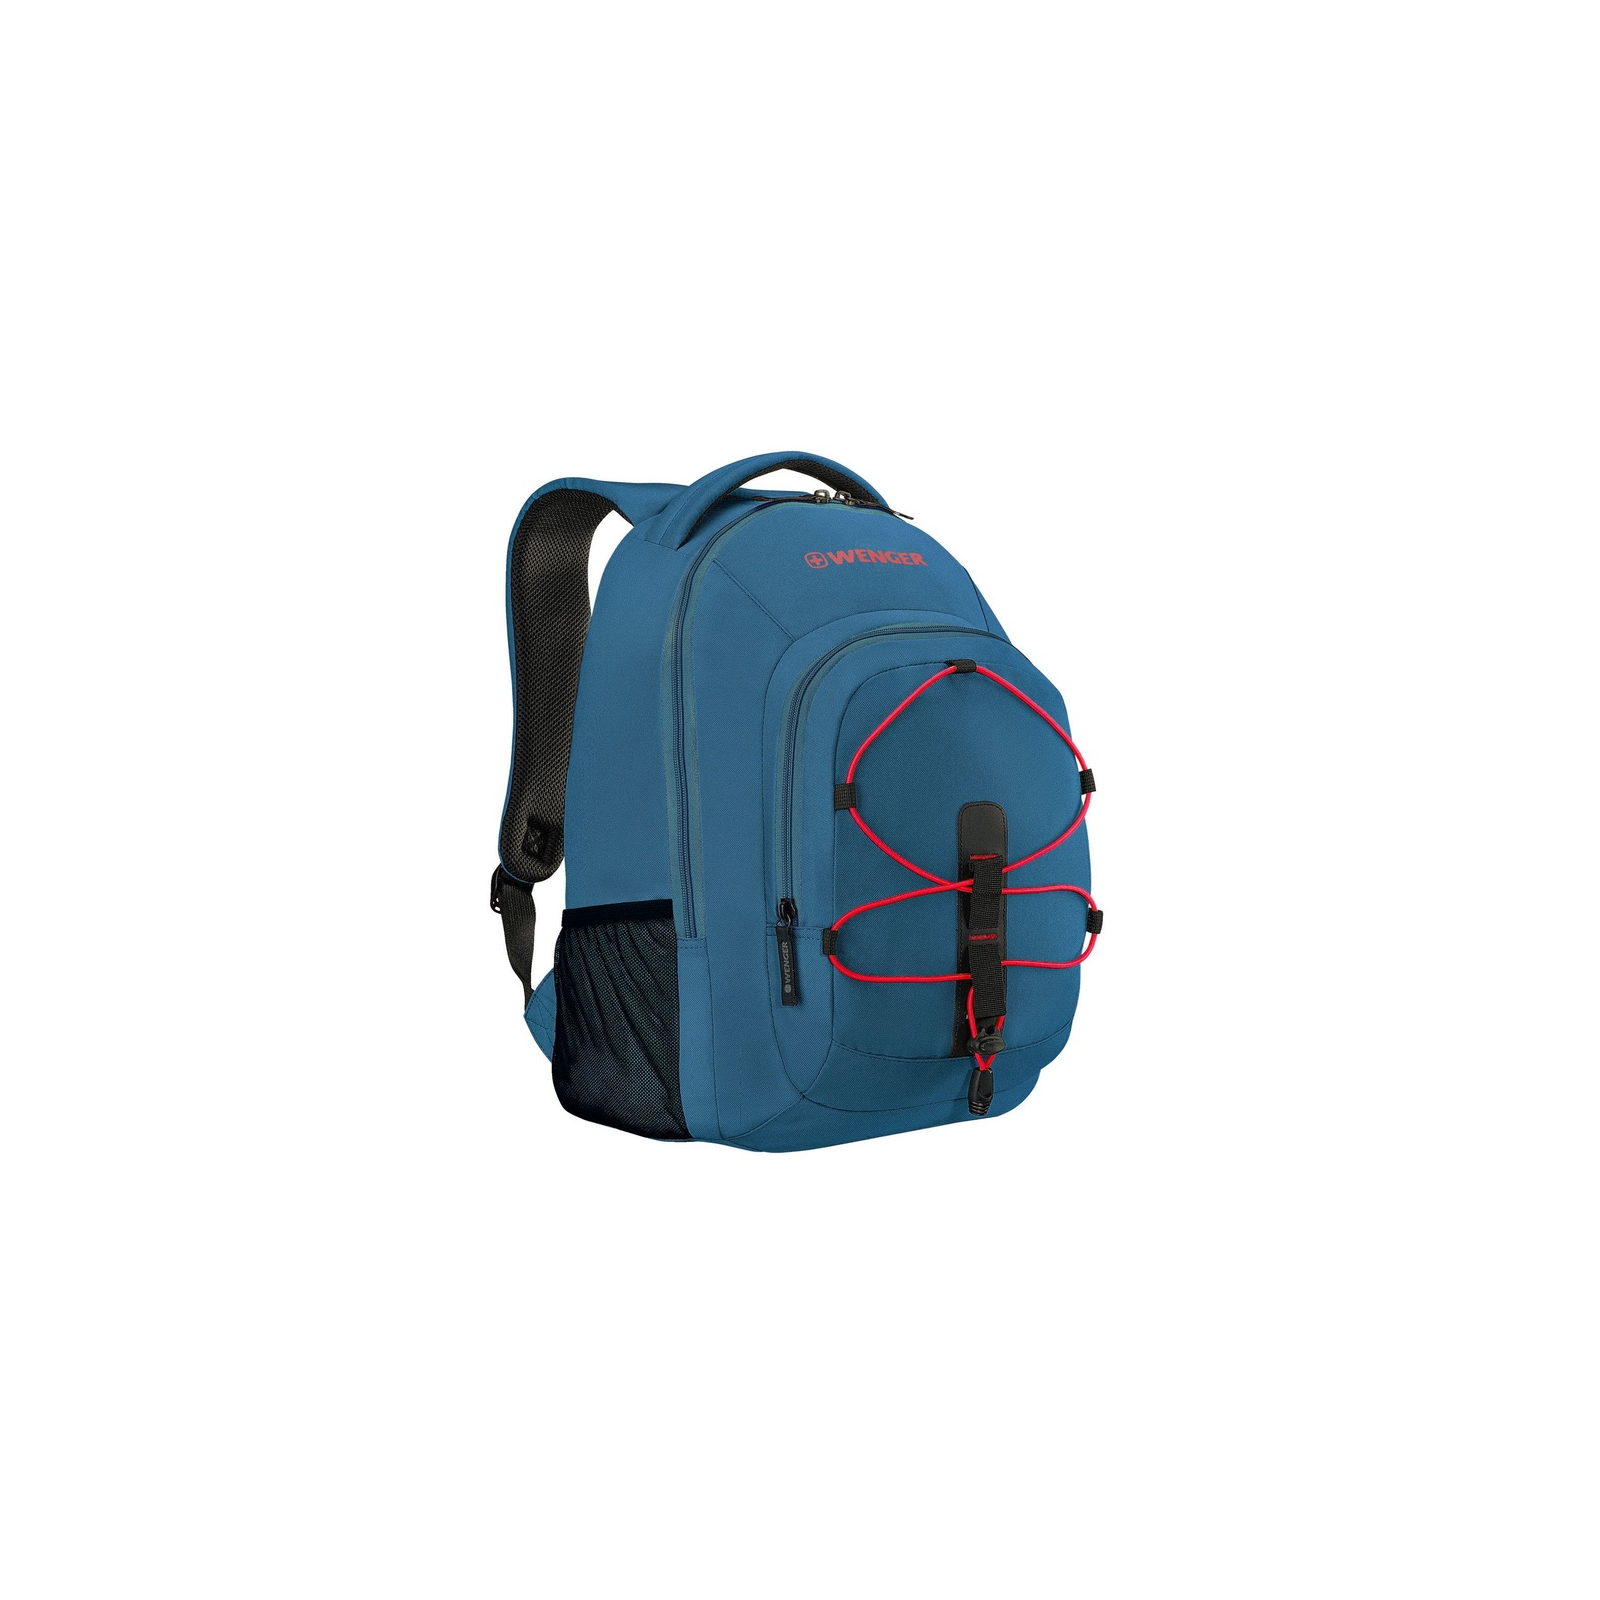 Рюкзак для ноутбука Wenger 16" Mars Blue (610204) изображение 4